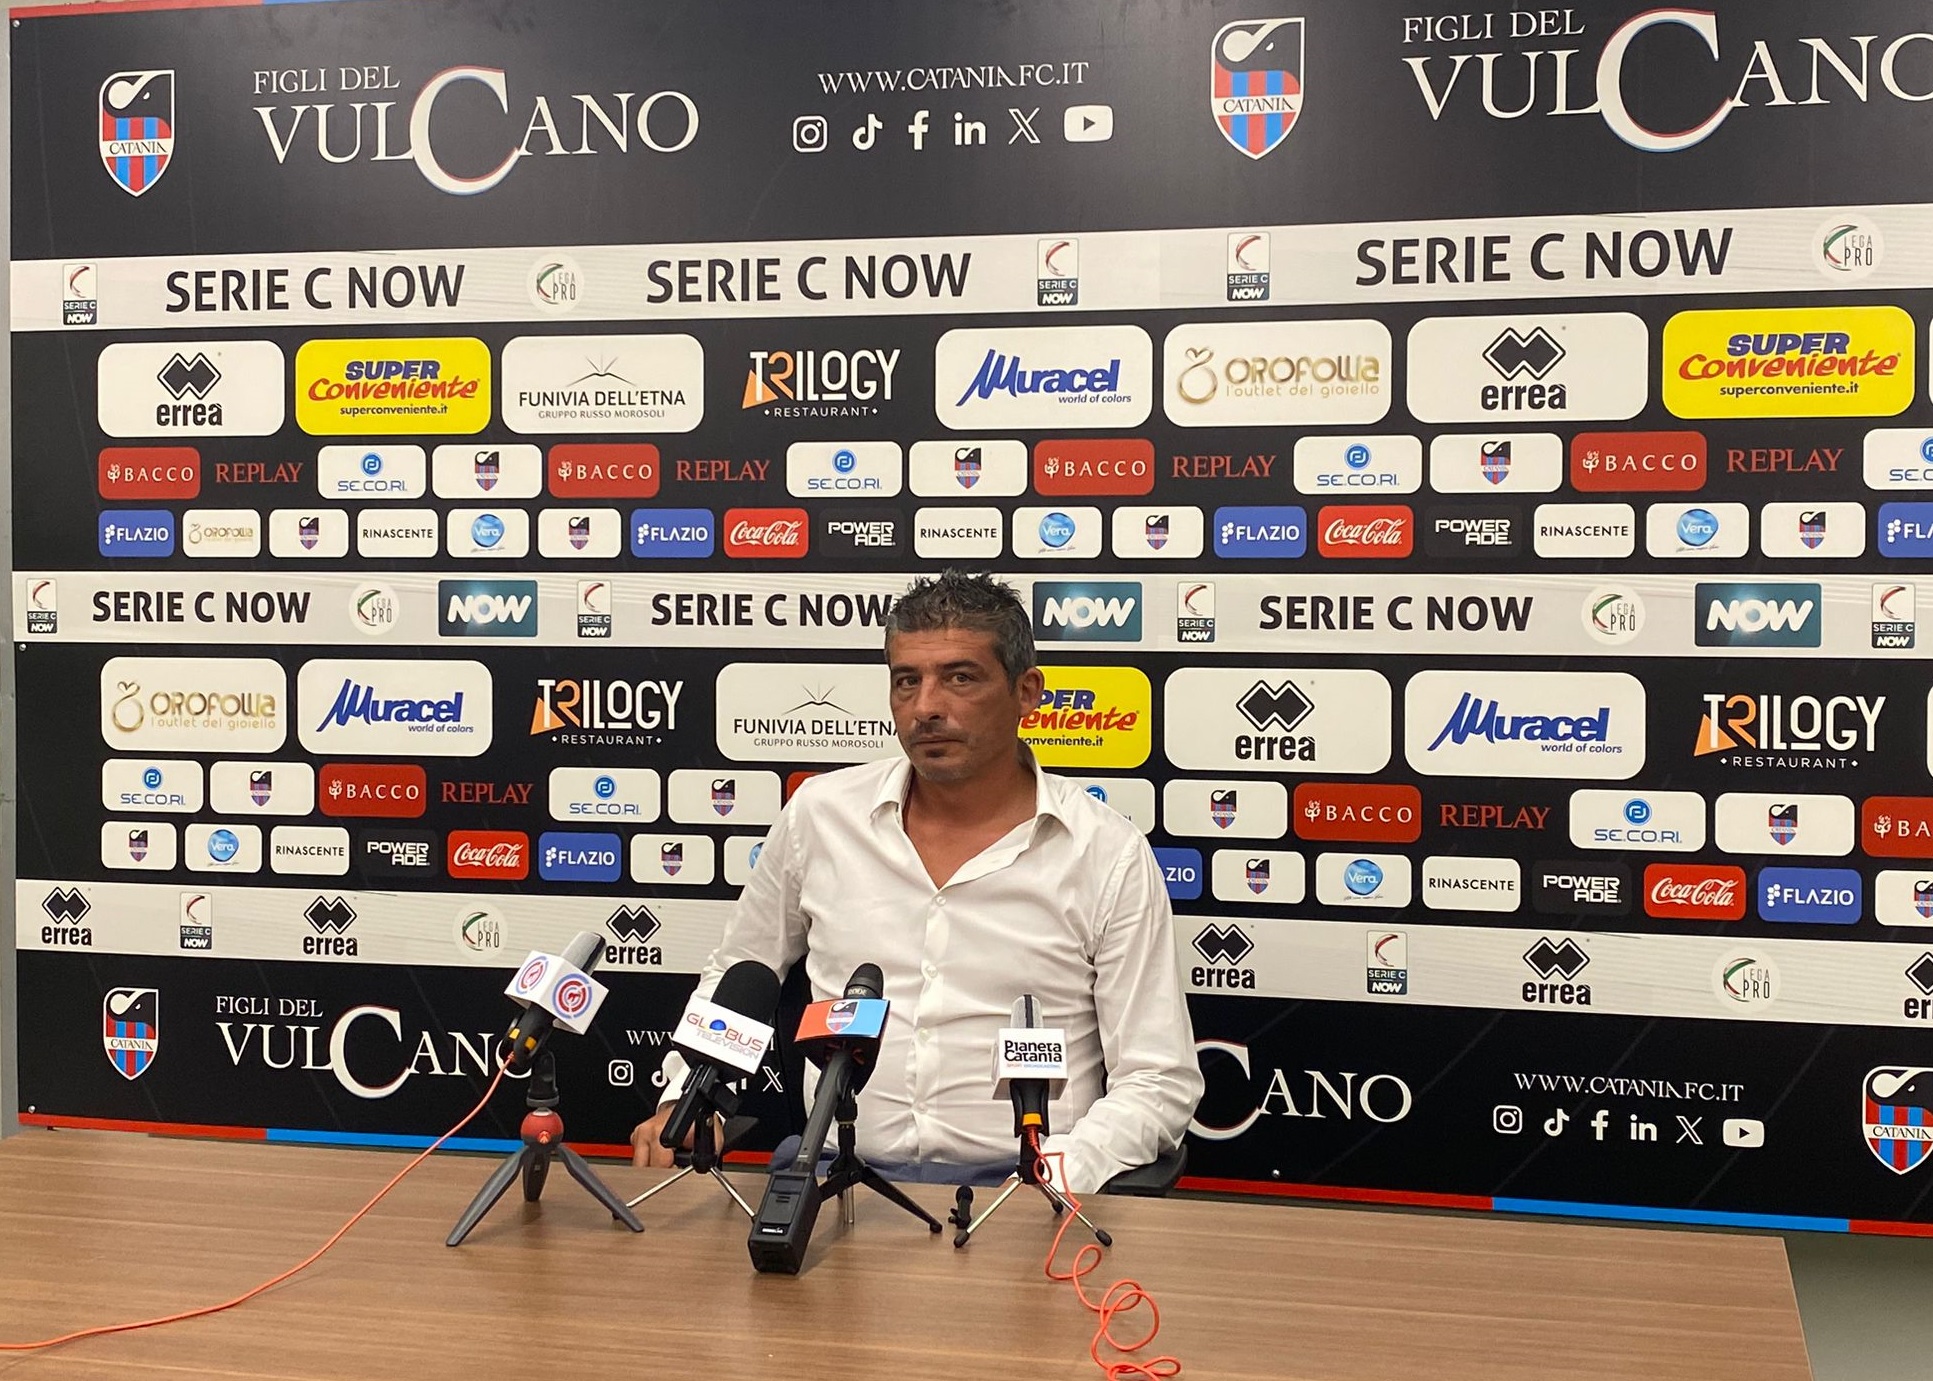 Catania-Foggia, la conferenza stampa di Tabbiani tra turnover e possibili sorprese